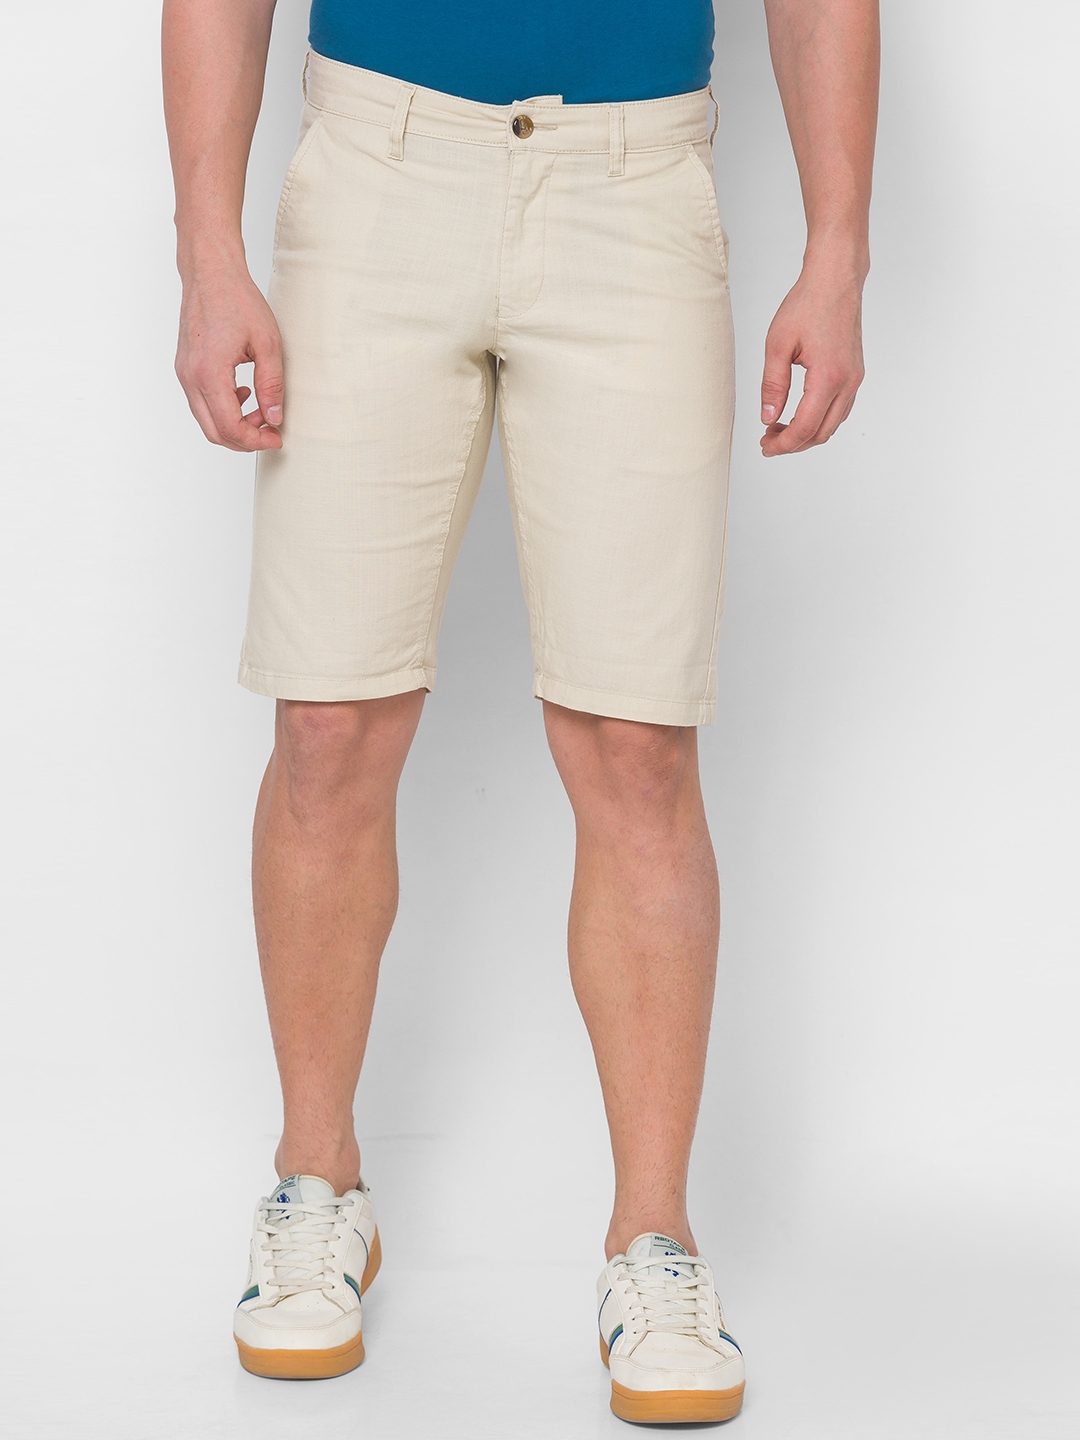 globus | Men's Beige Cotton Solid Shorts 0